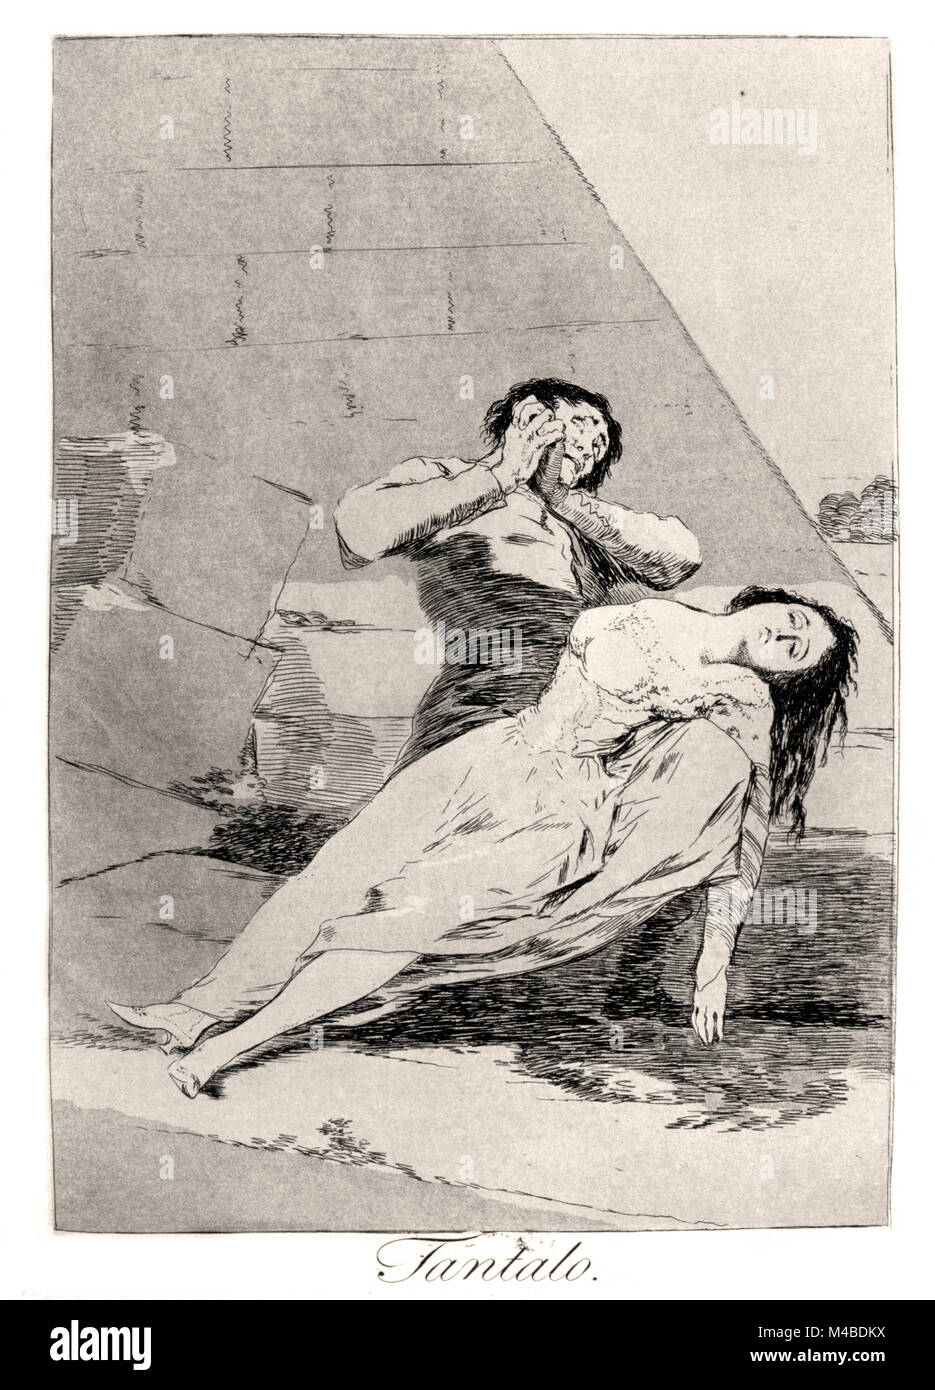 Francisco de Goya - Tantalas 1799. Plate 9 of Los caprichos. Stock Photo